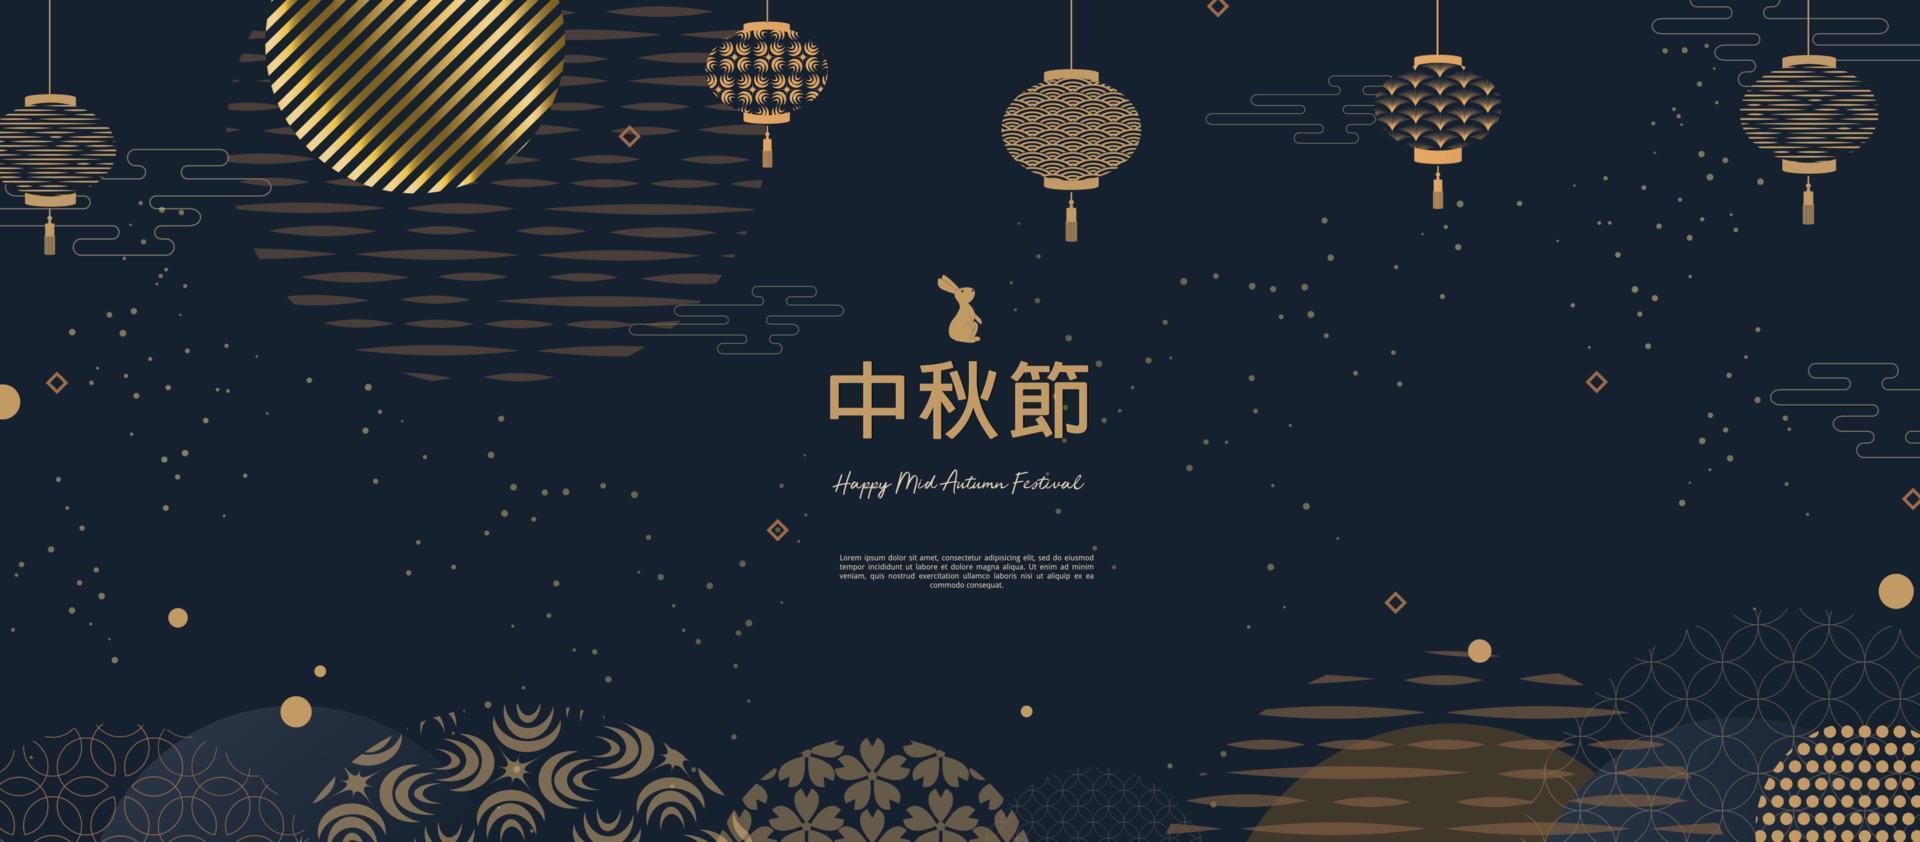 bannerontwerp met traditionele Chinese cirkelspatronen die de volle maan vertegenwoordigen, Chinese tekst gelukkig medio herfst, goud op donkerblauw. vector vlakke stijl.